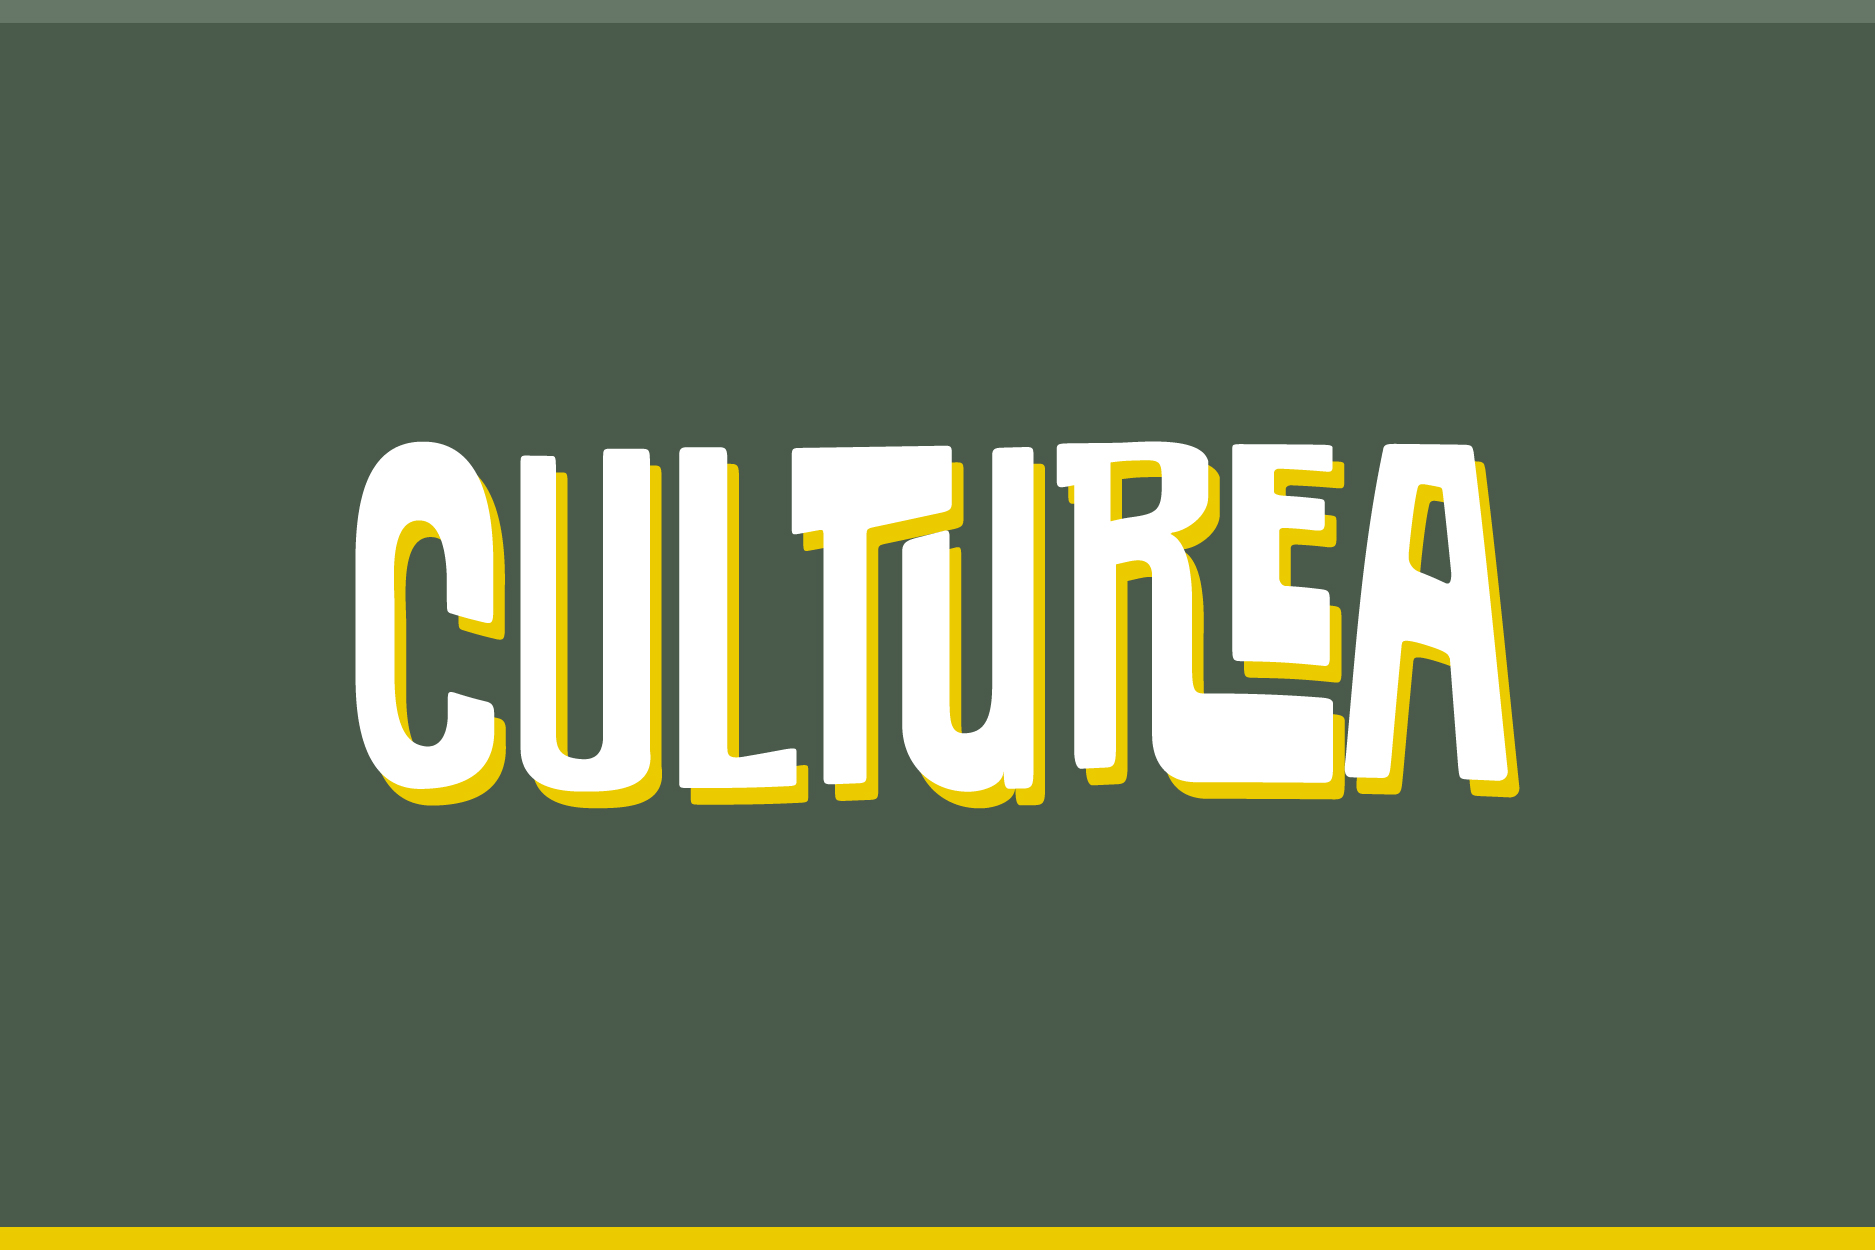 Imaxe do programa Culturea